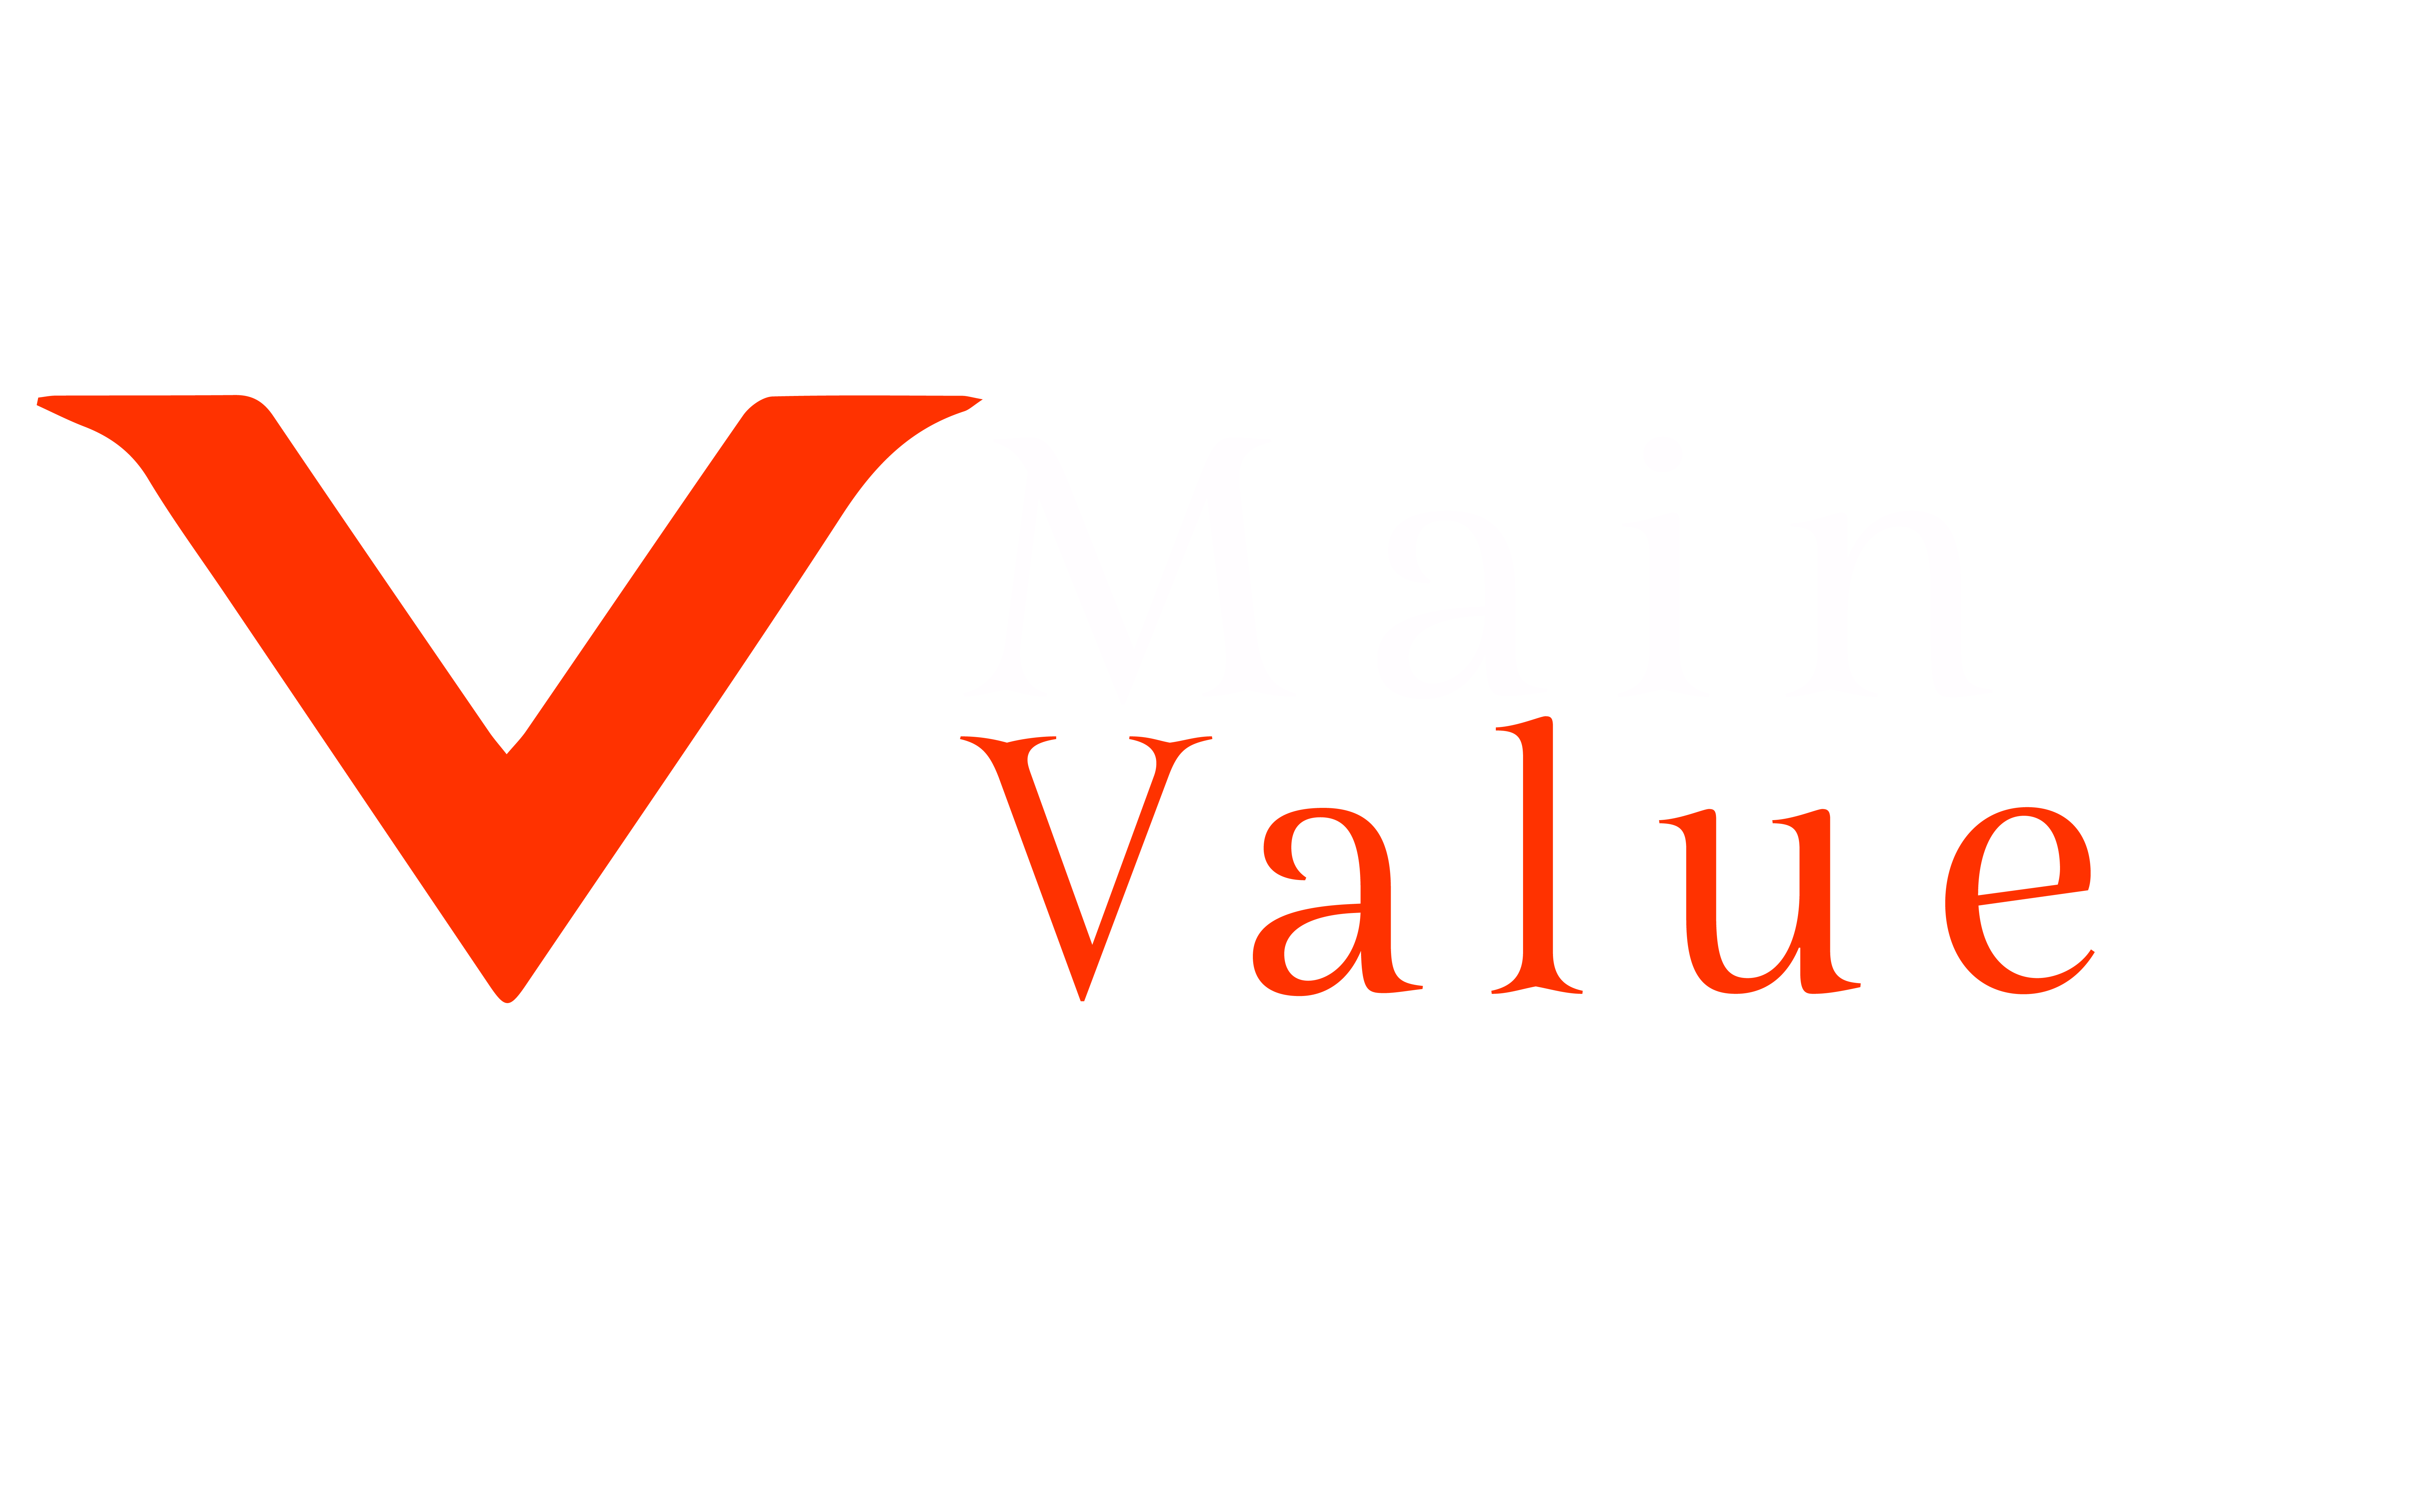 Main Value Logo